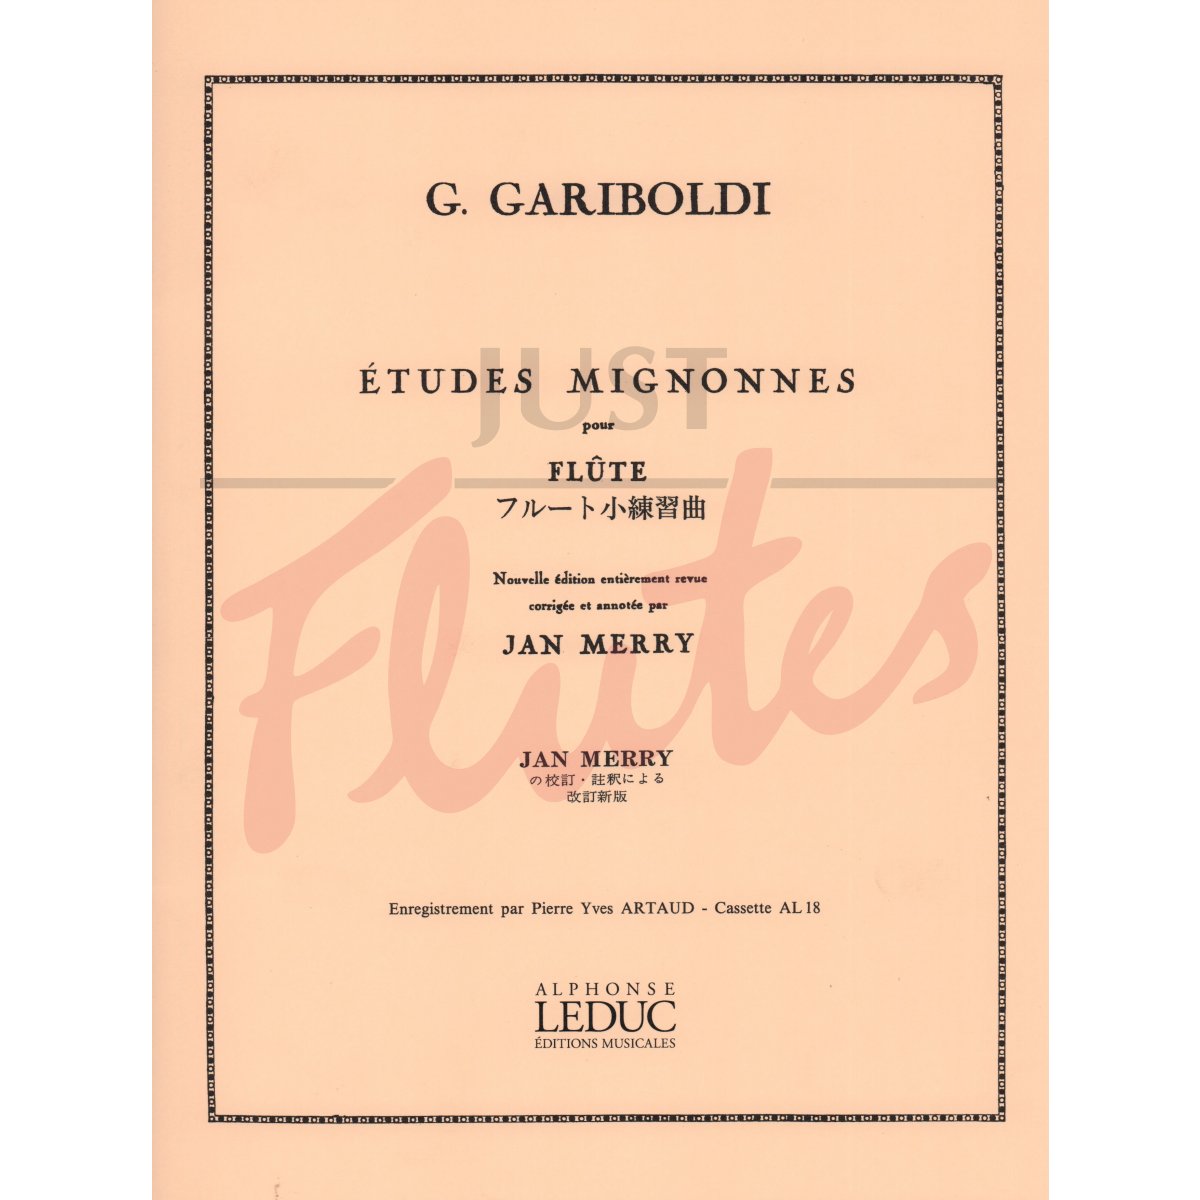 Etudes Mignonnes for Flute